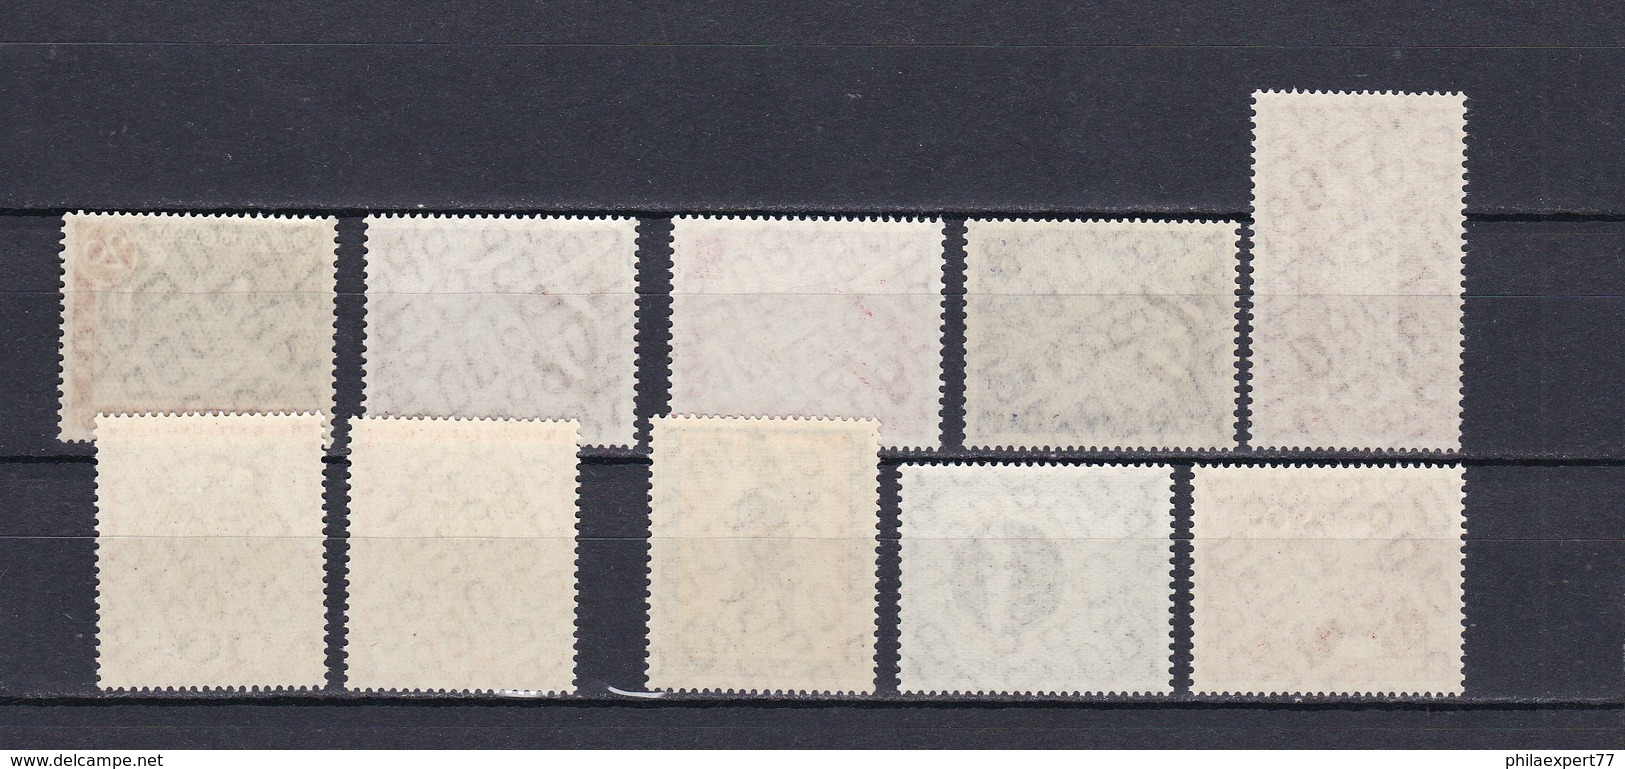 Berlin - 1957 - Sammlung - Postfrisch - Unused Stamps